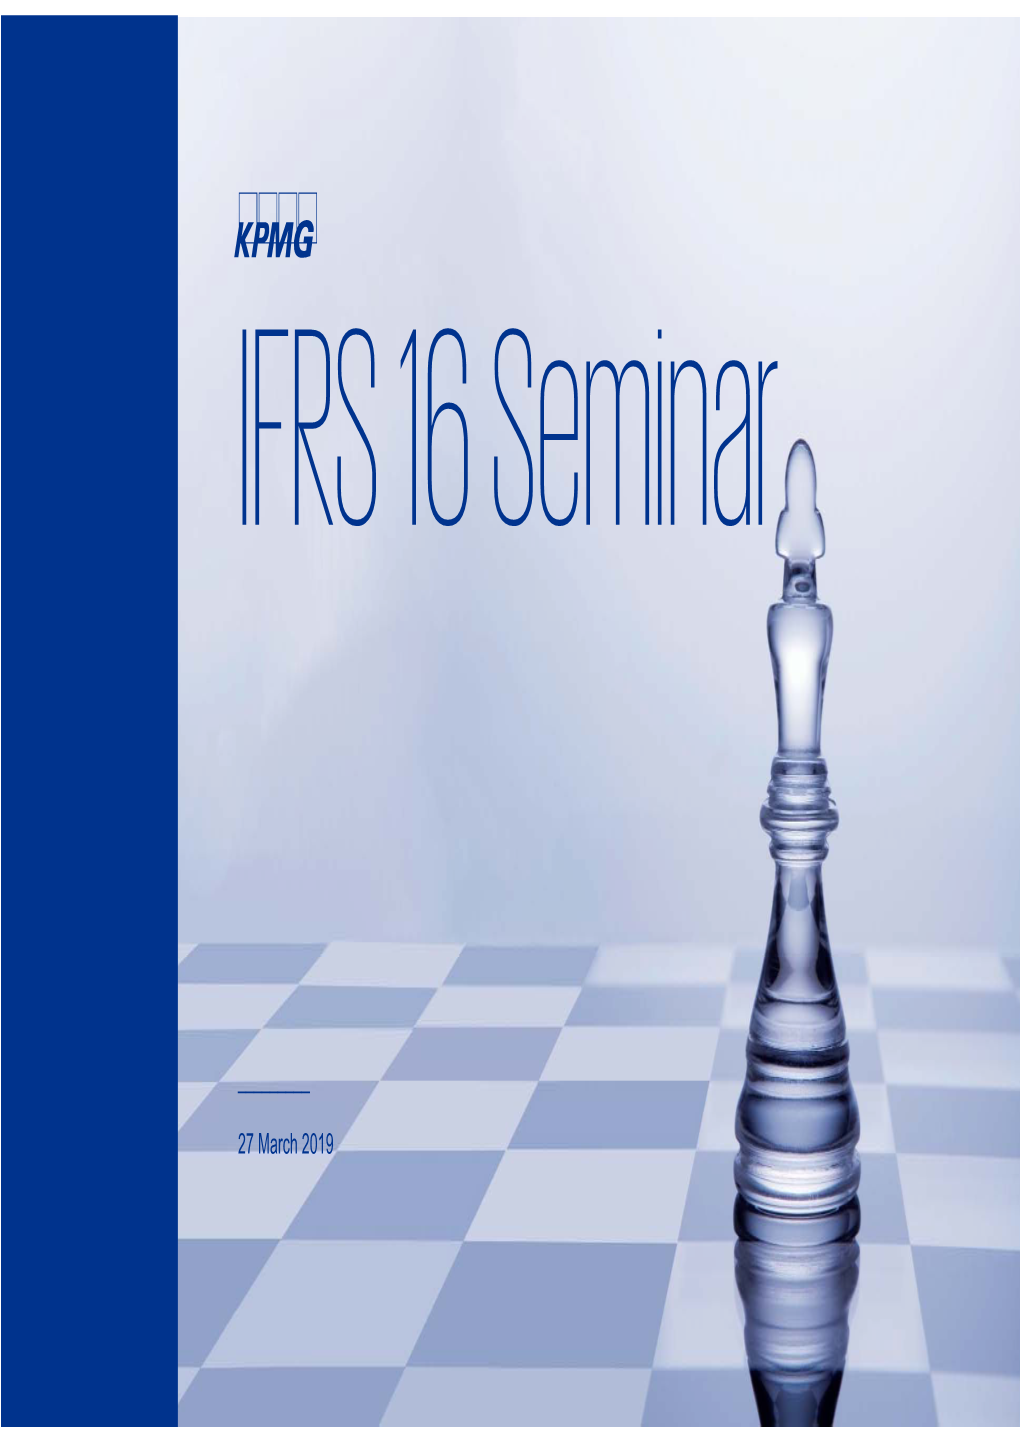 IFRS 16 Seminar